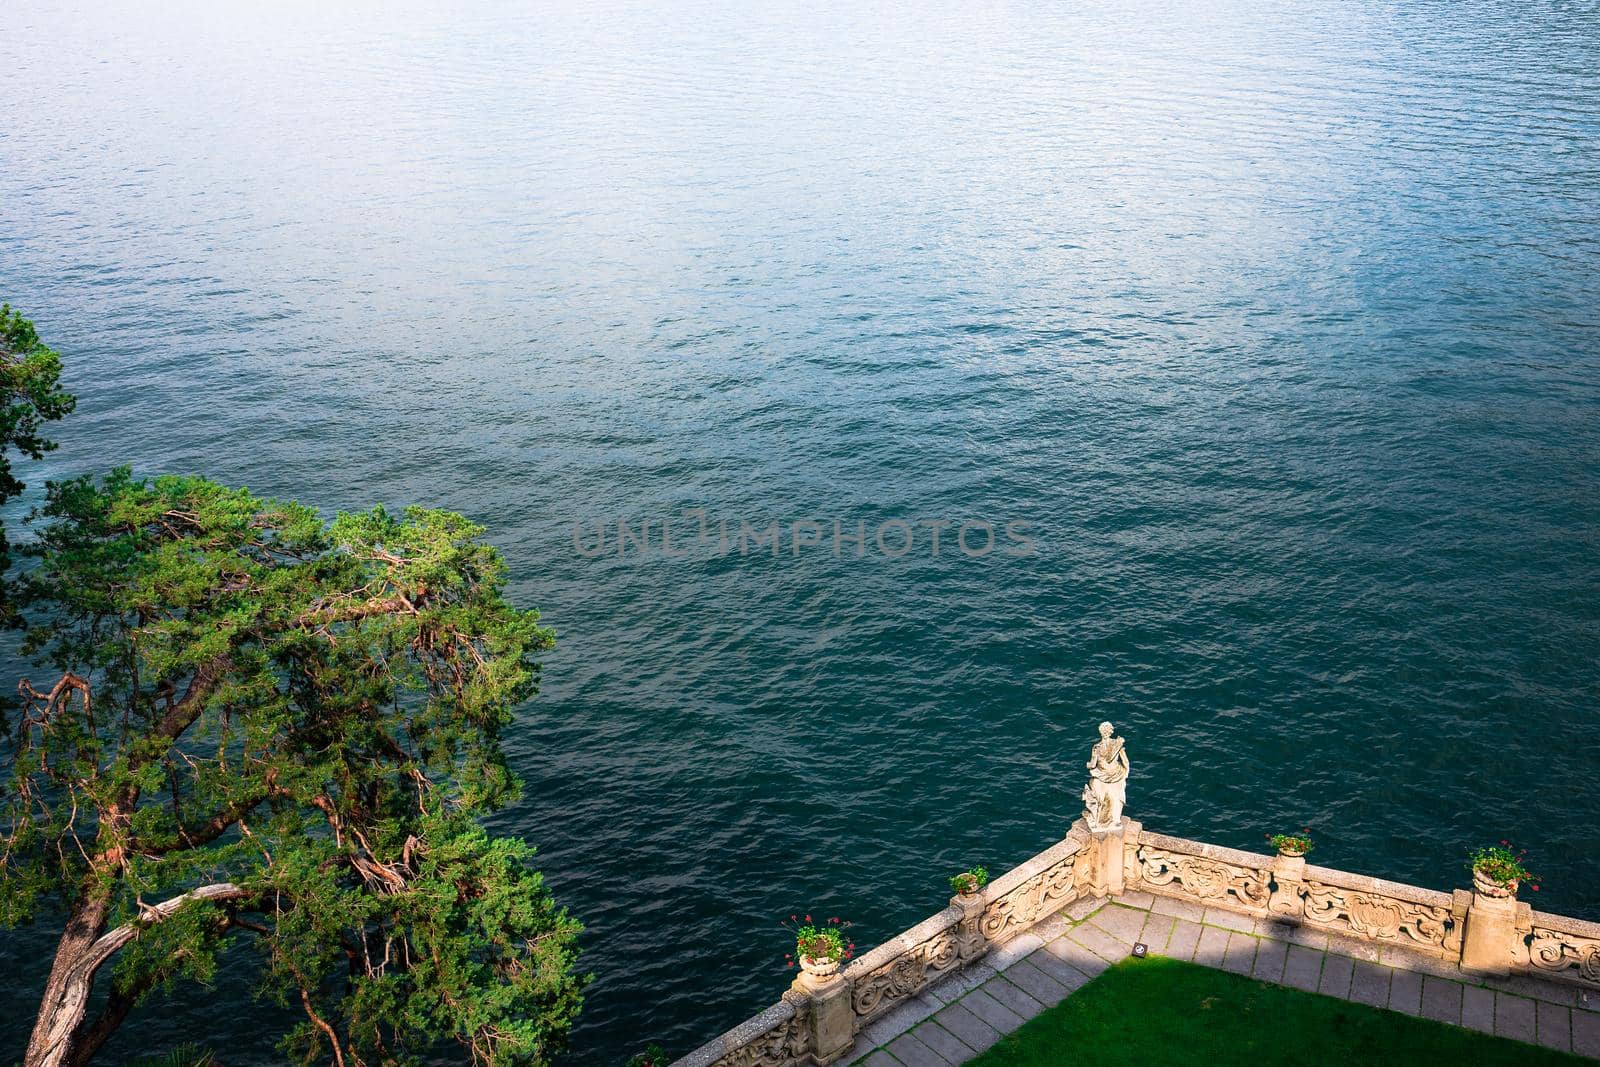 Villa del Balbianello, lake Como, Lenno, italy by photogolfer